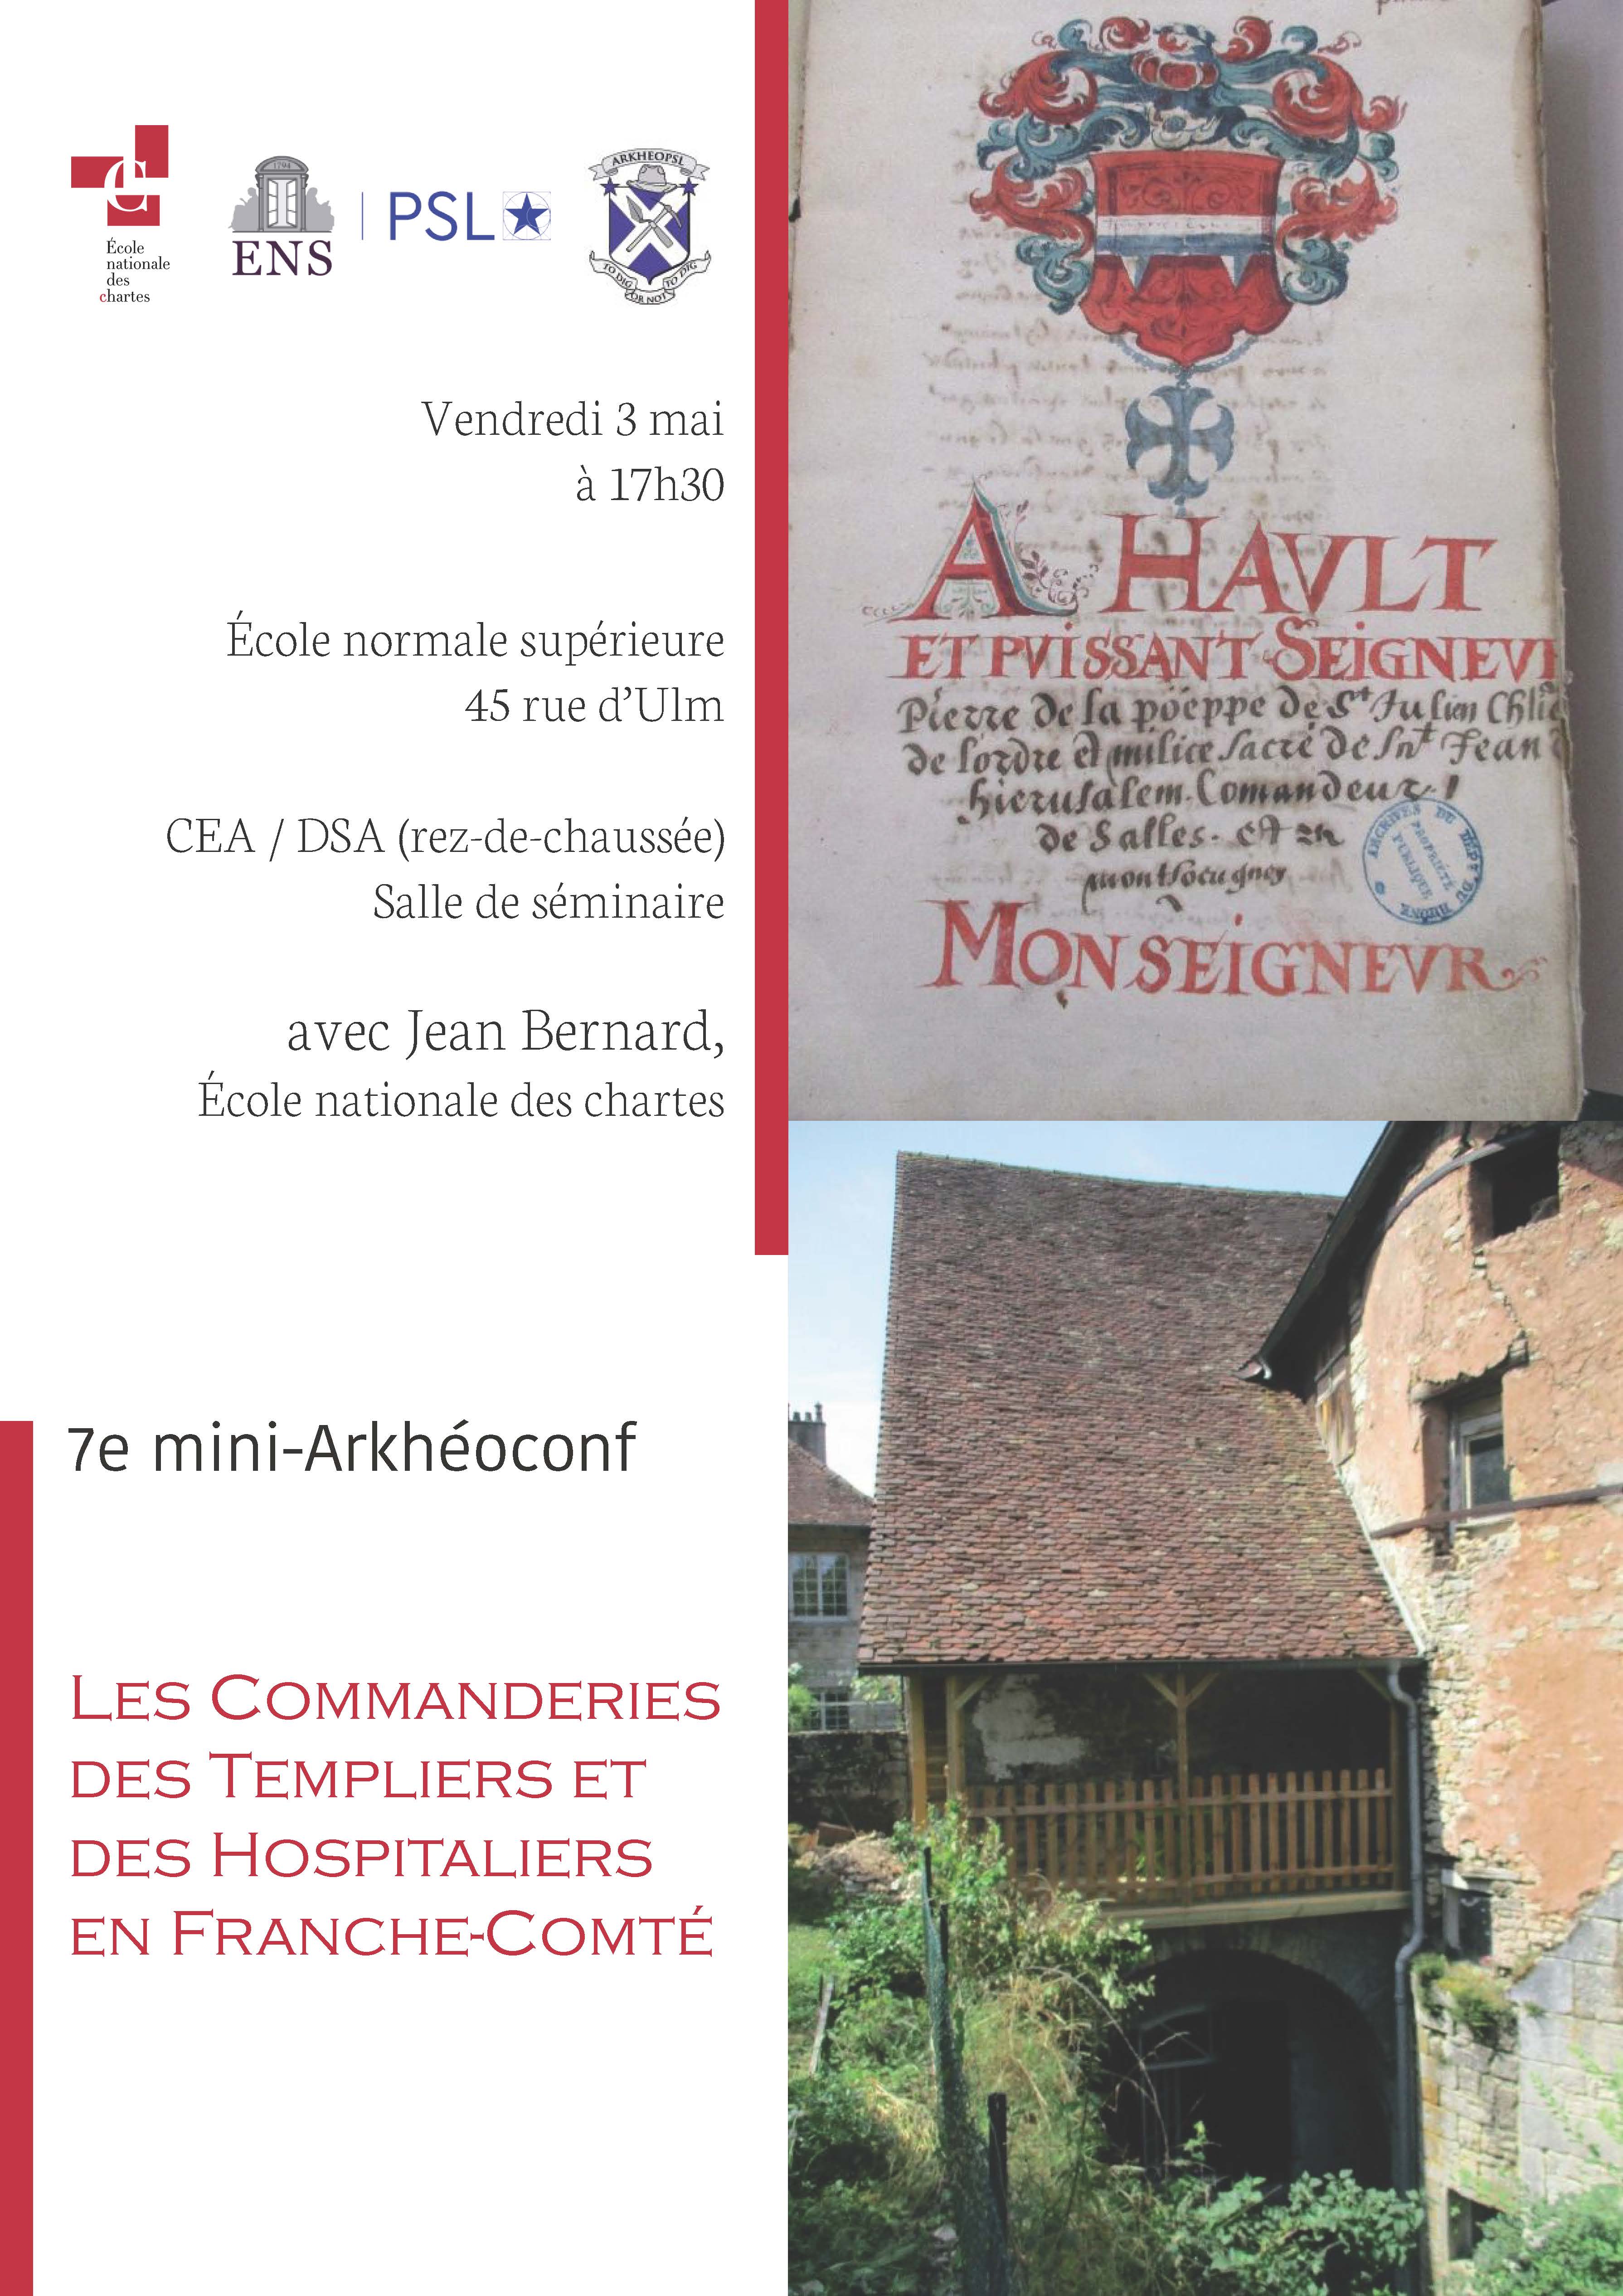 Les commanderies des Templiers et Hospitaliers en Franche-Comté